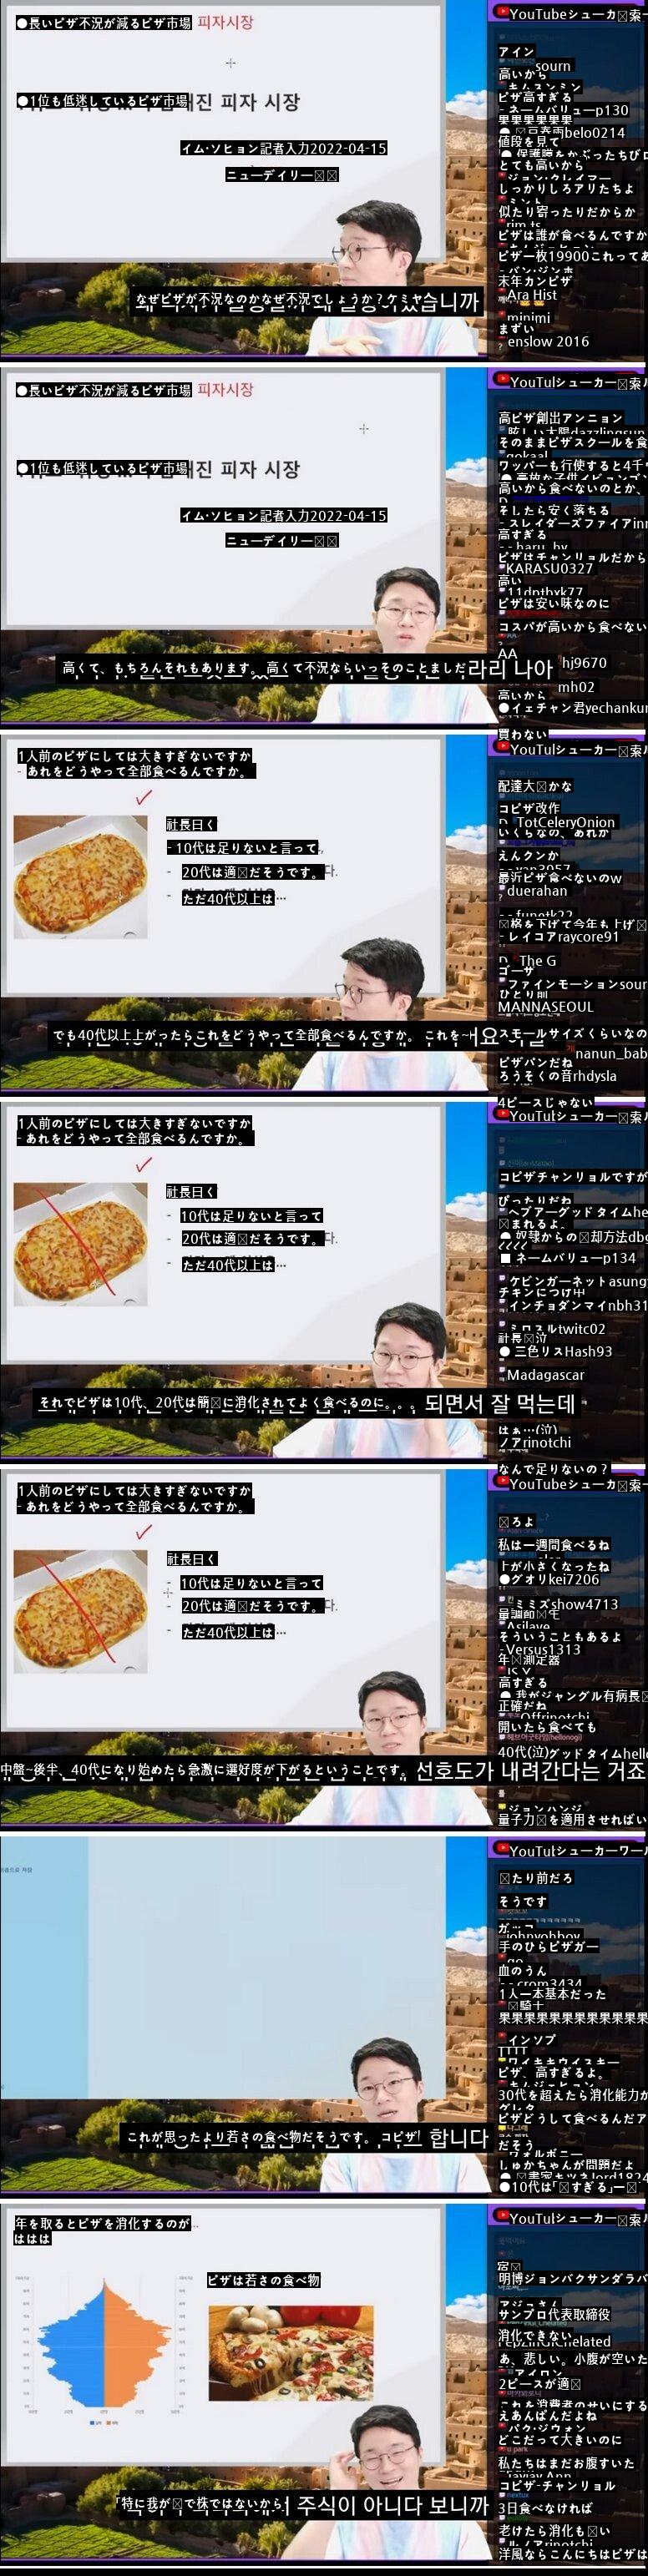 ●韓国のピザ業界が不況の理由